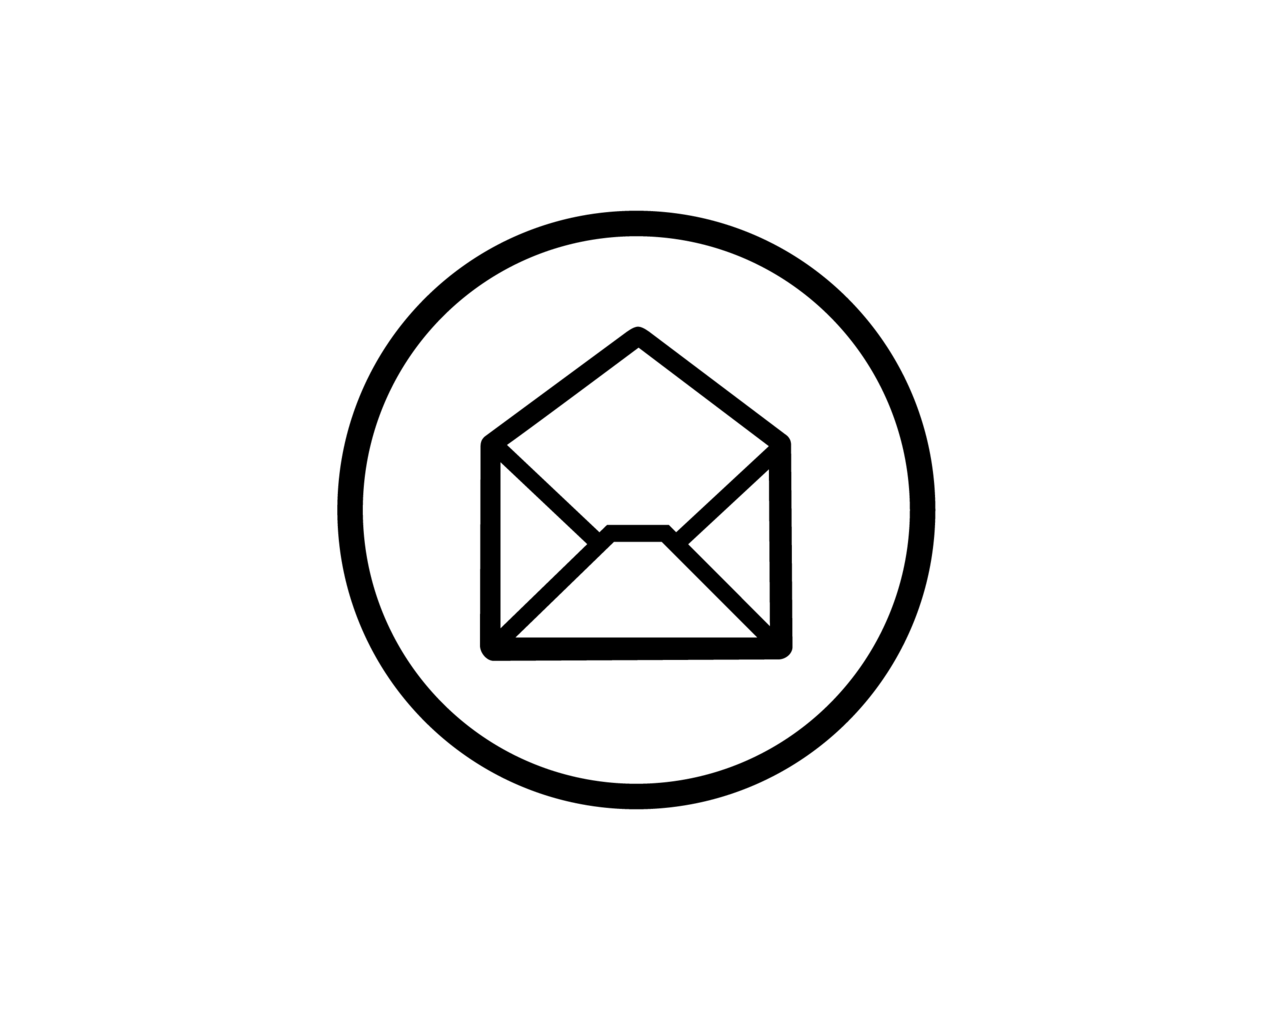 Der Icon für den Link zum Email schreiben